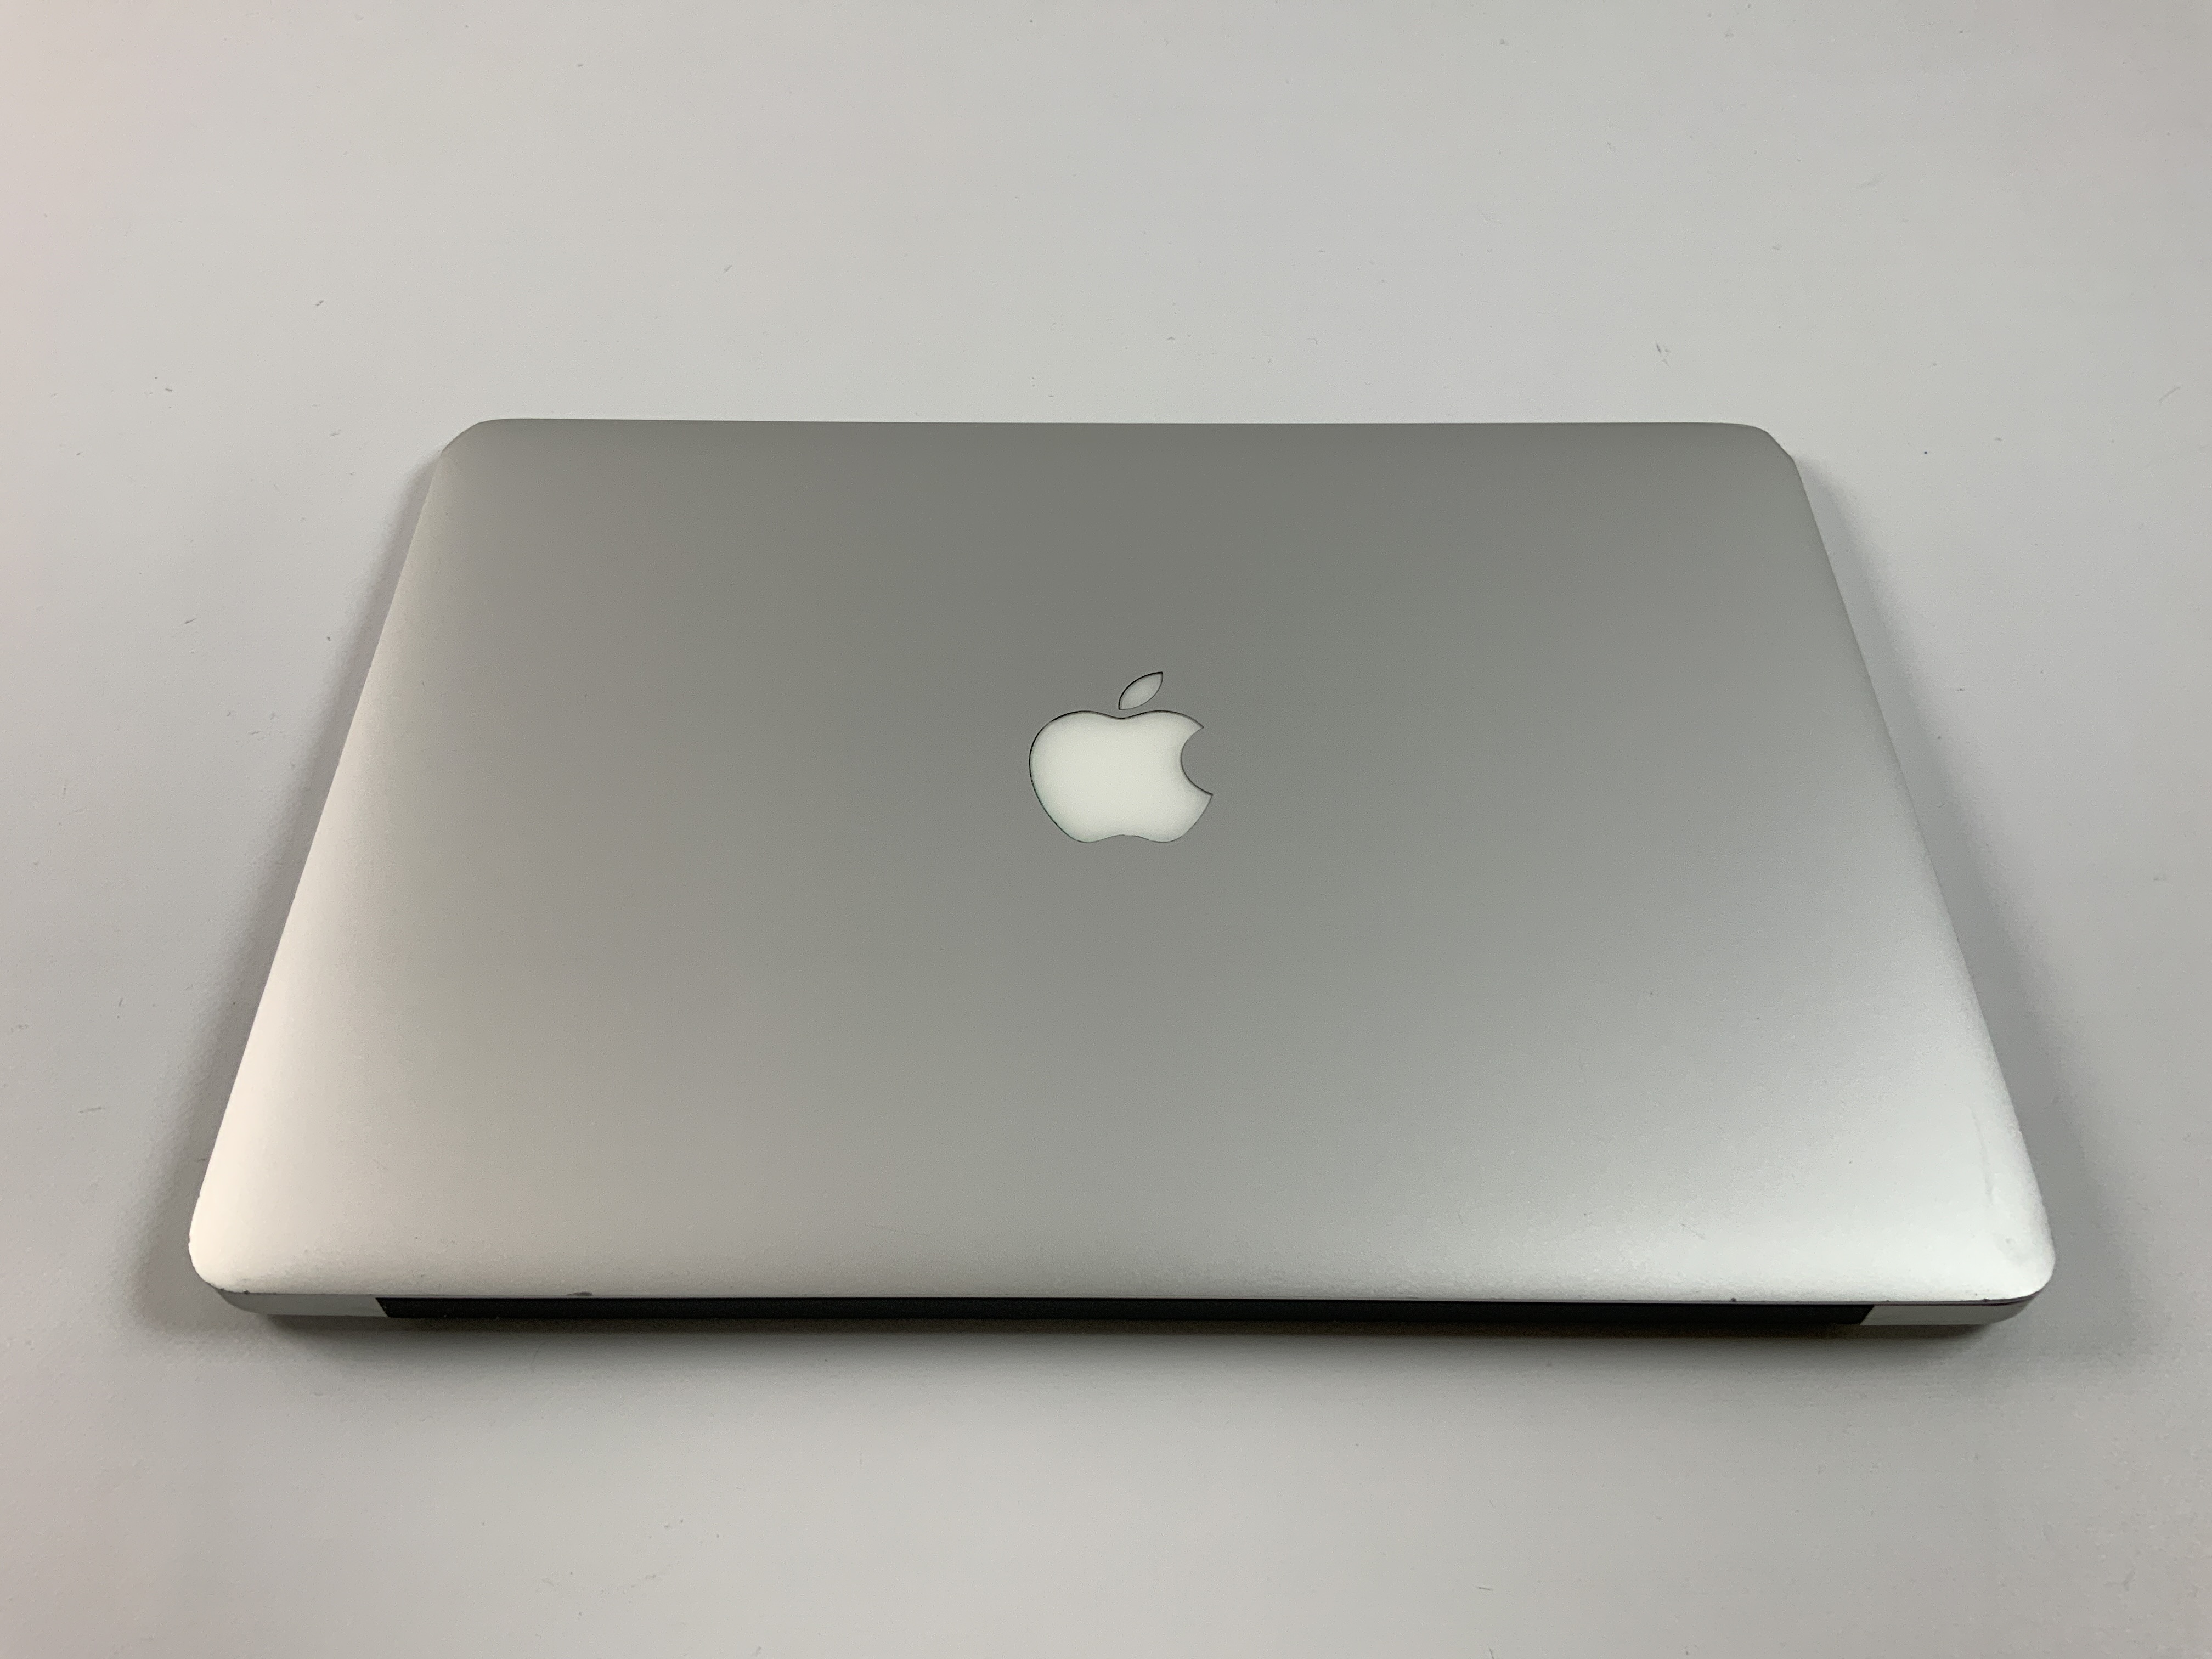 MacBook Air 13" Mid 2017 (Intel Core i5 1.8 GHz 8 GB RAM 128 GB SSD), Intel Core i5 1.8 GHz, 8 GB RAM, 128 GB SSD, immagine 3